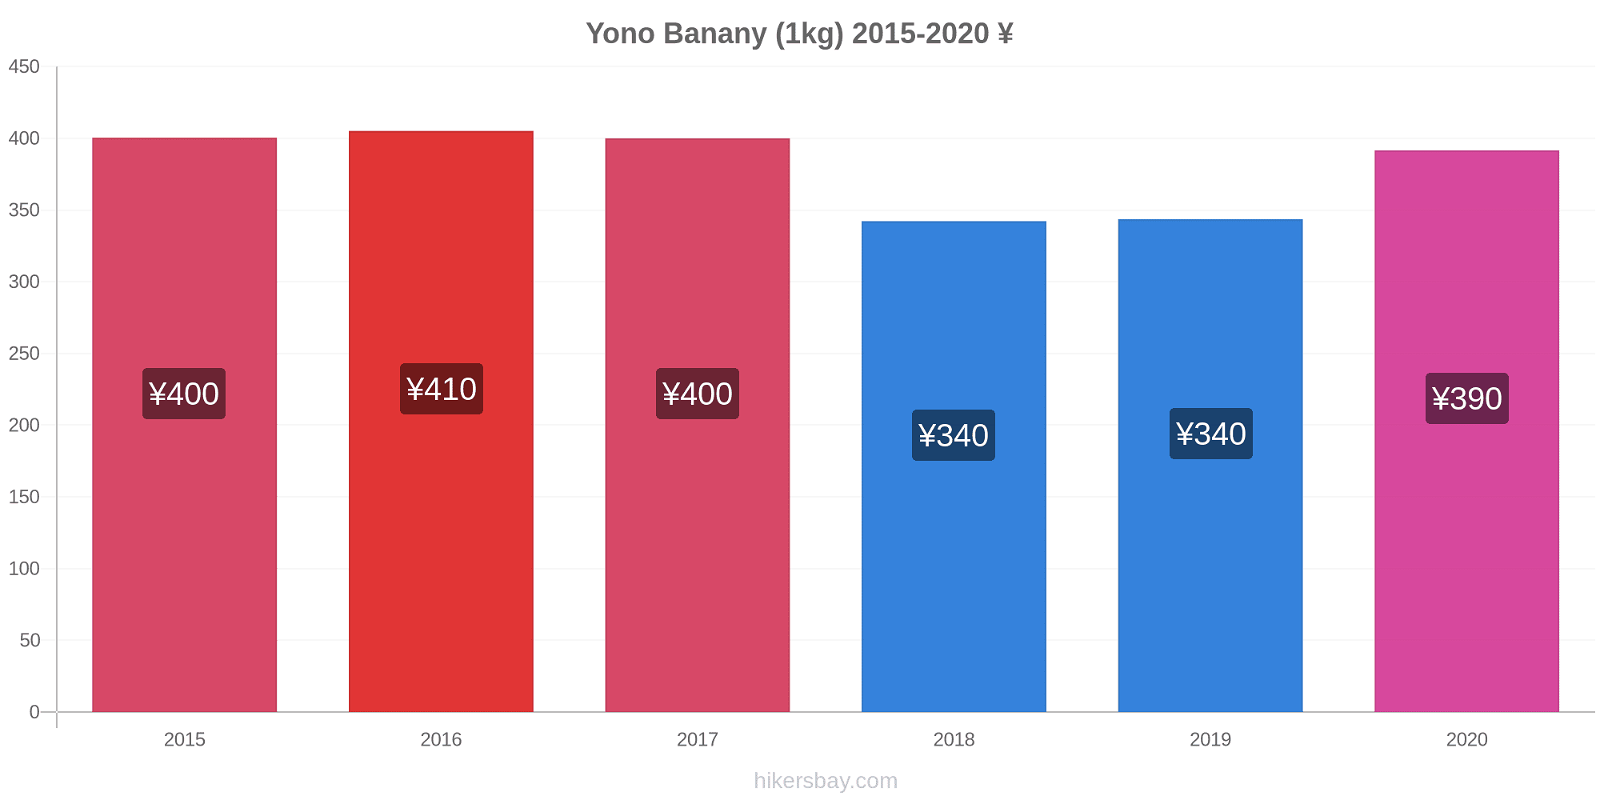 Yono zmiany cen Banany (1kg) hikersbay.com